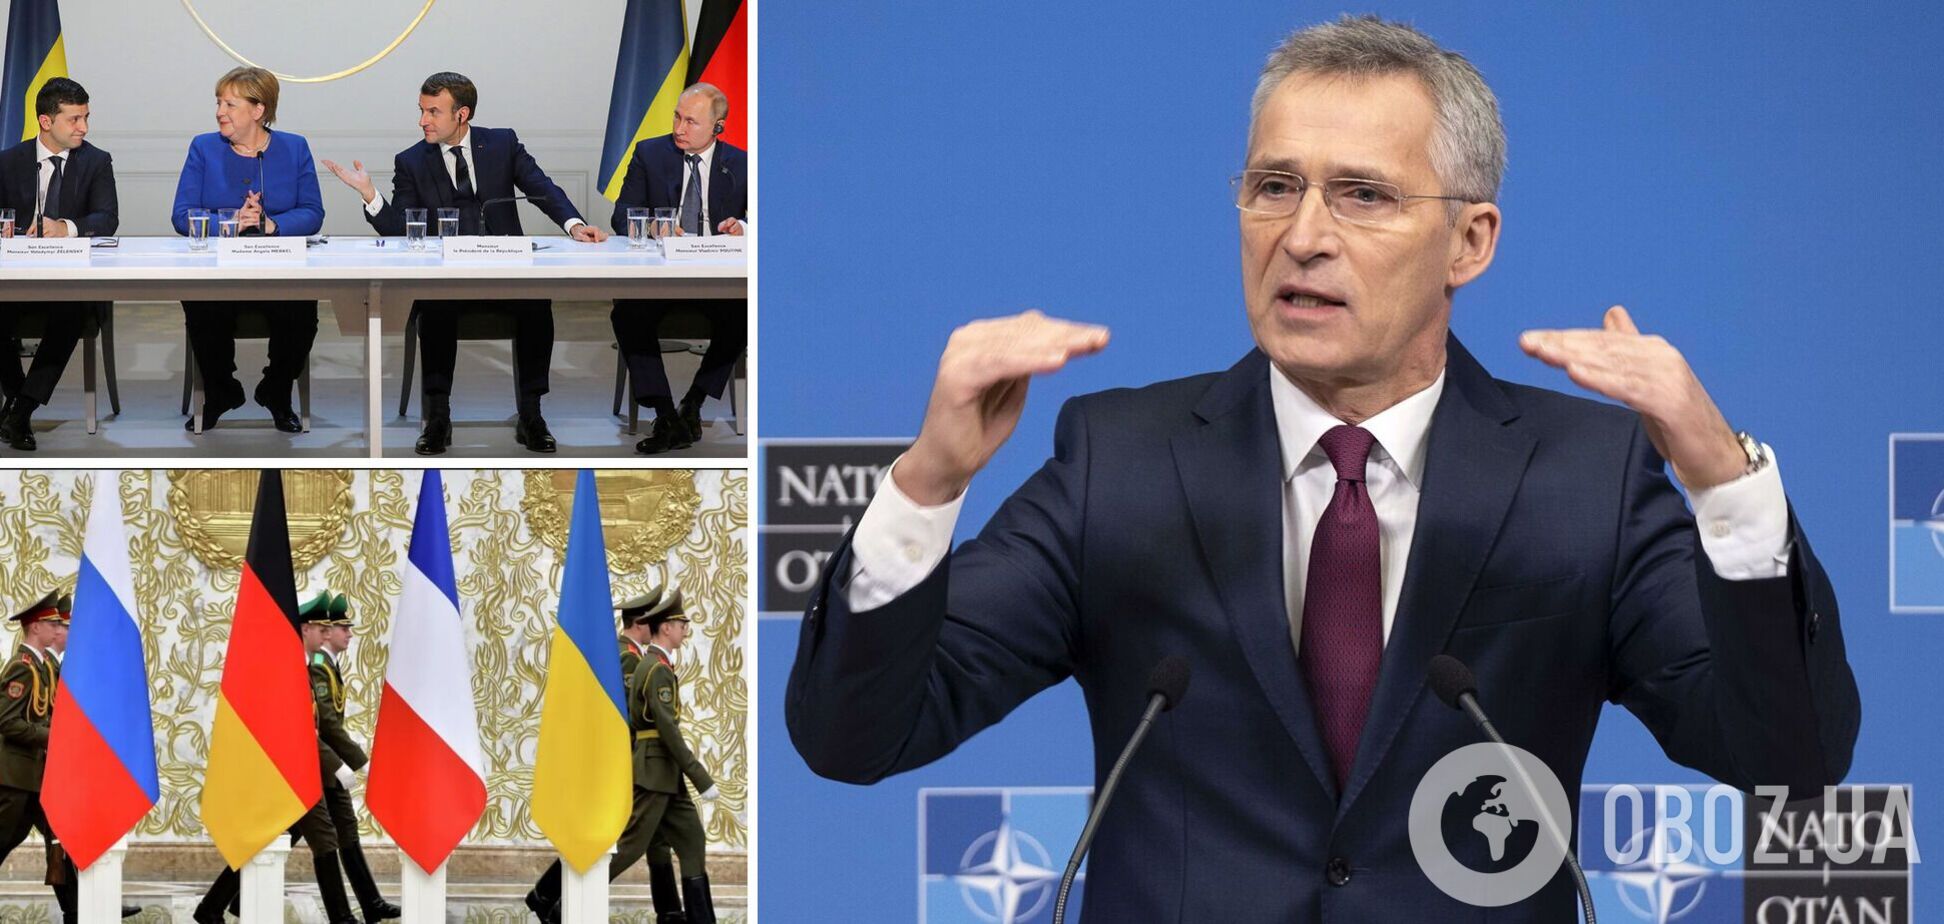 НАТО выступает за продолжение переговоров в 'нормандском формате'